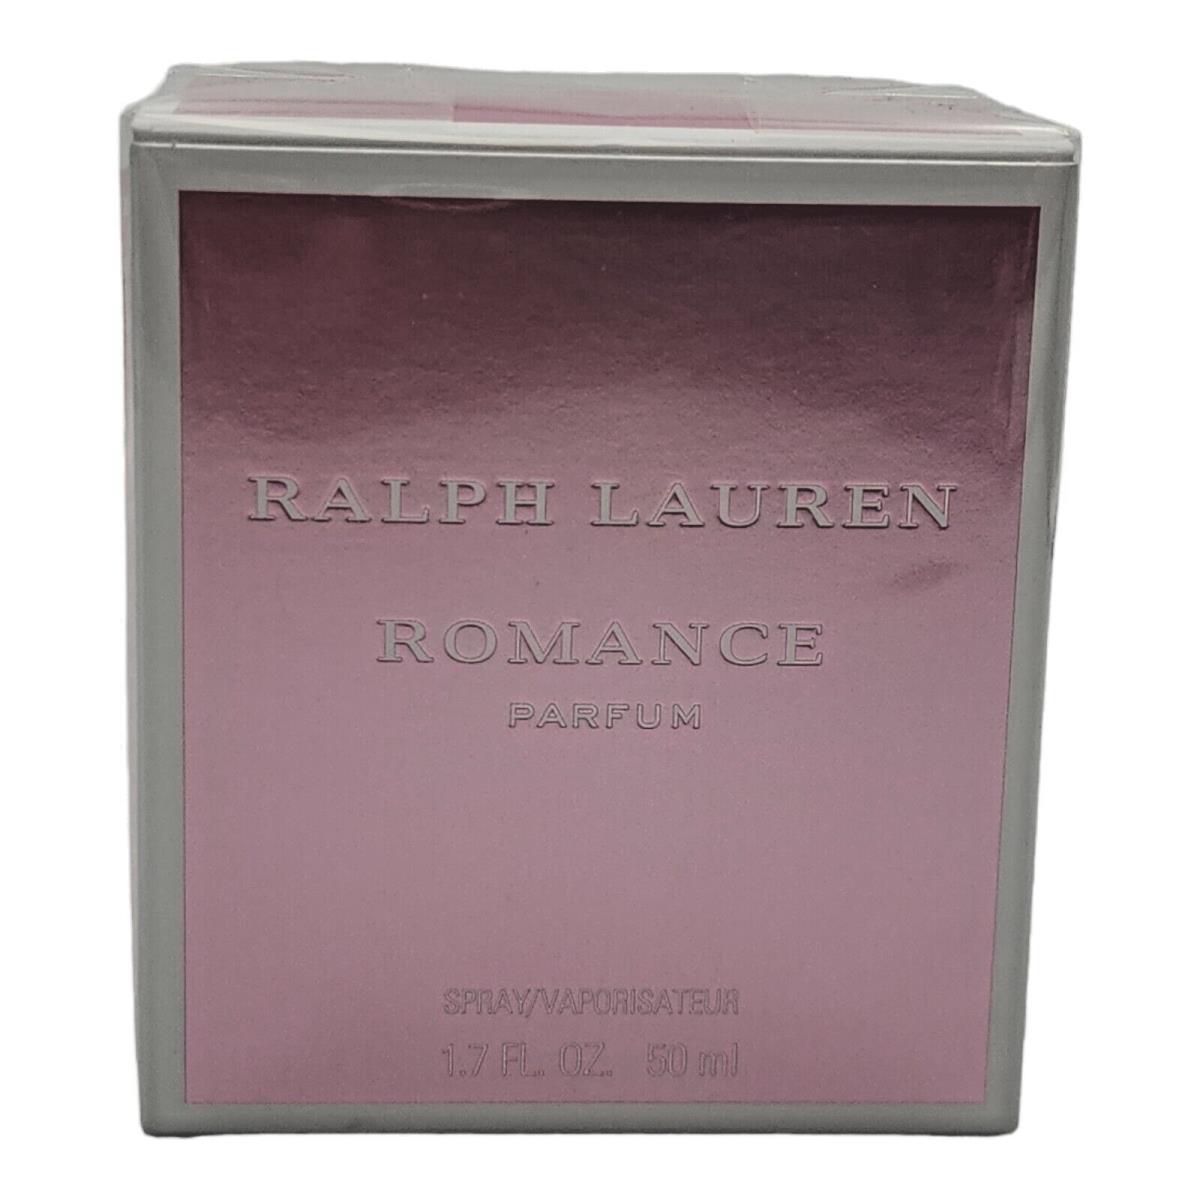 Romance by Ralph Lauren Eau de Parfum Spray 1.7 oz / 50 ml - Ralph